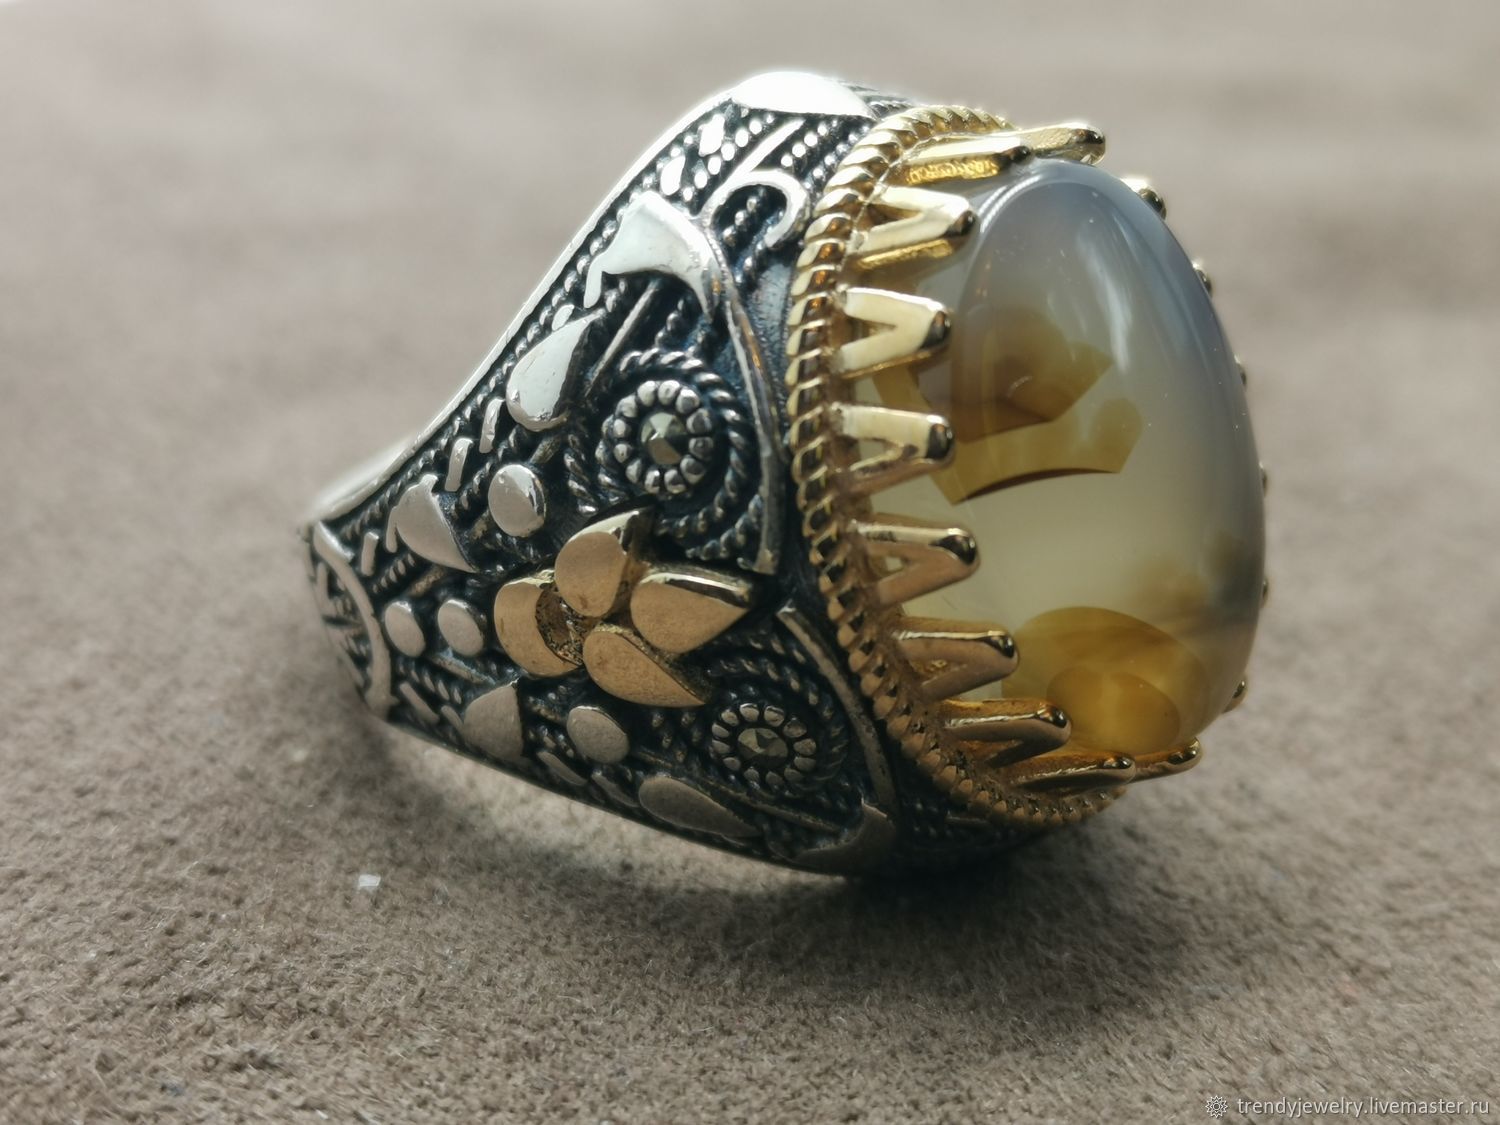 Перстни мужские серебро с камнями. Перстень Готланд агат. Золотая 5850 мужская печатка вайтберес. Печатка агат перстень кольцо. Глазковый агат мужской перстень.